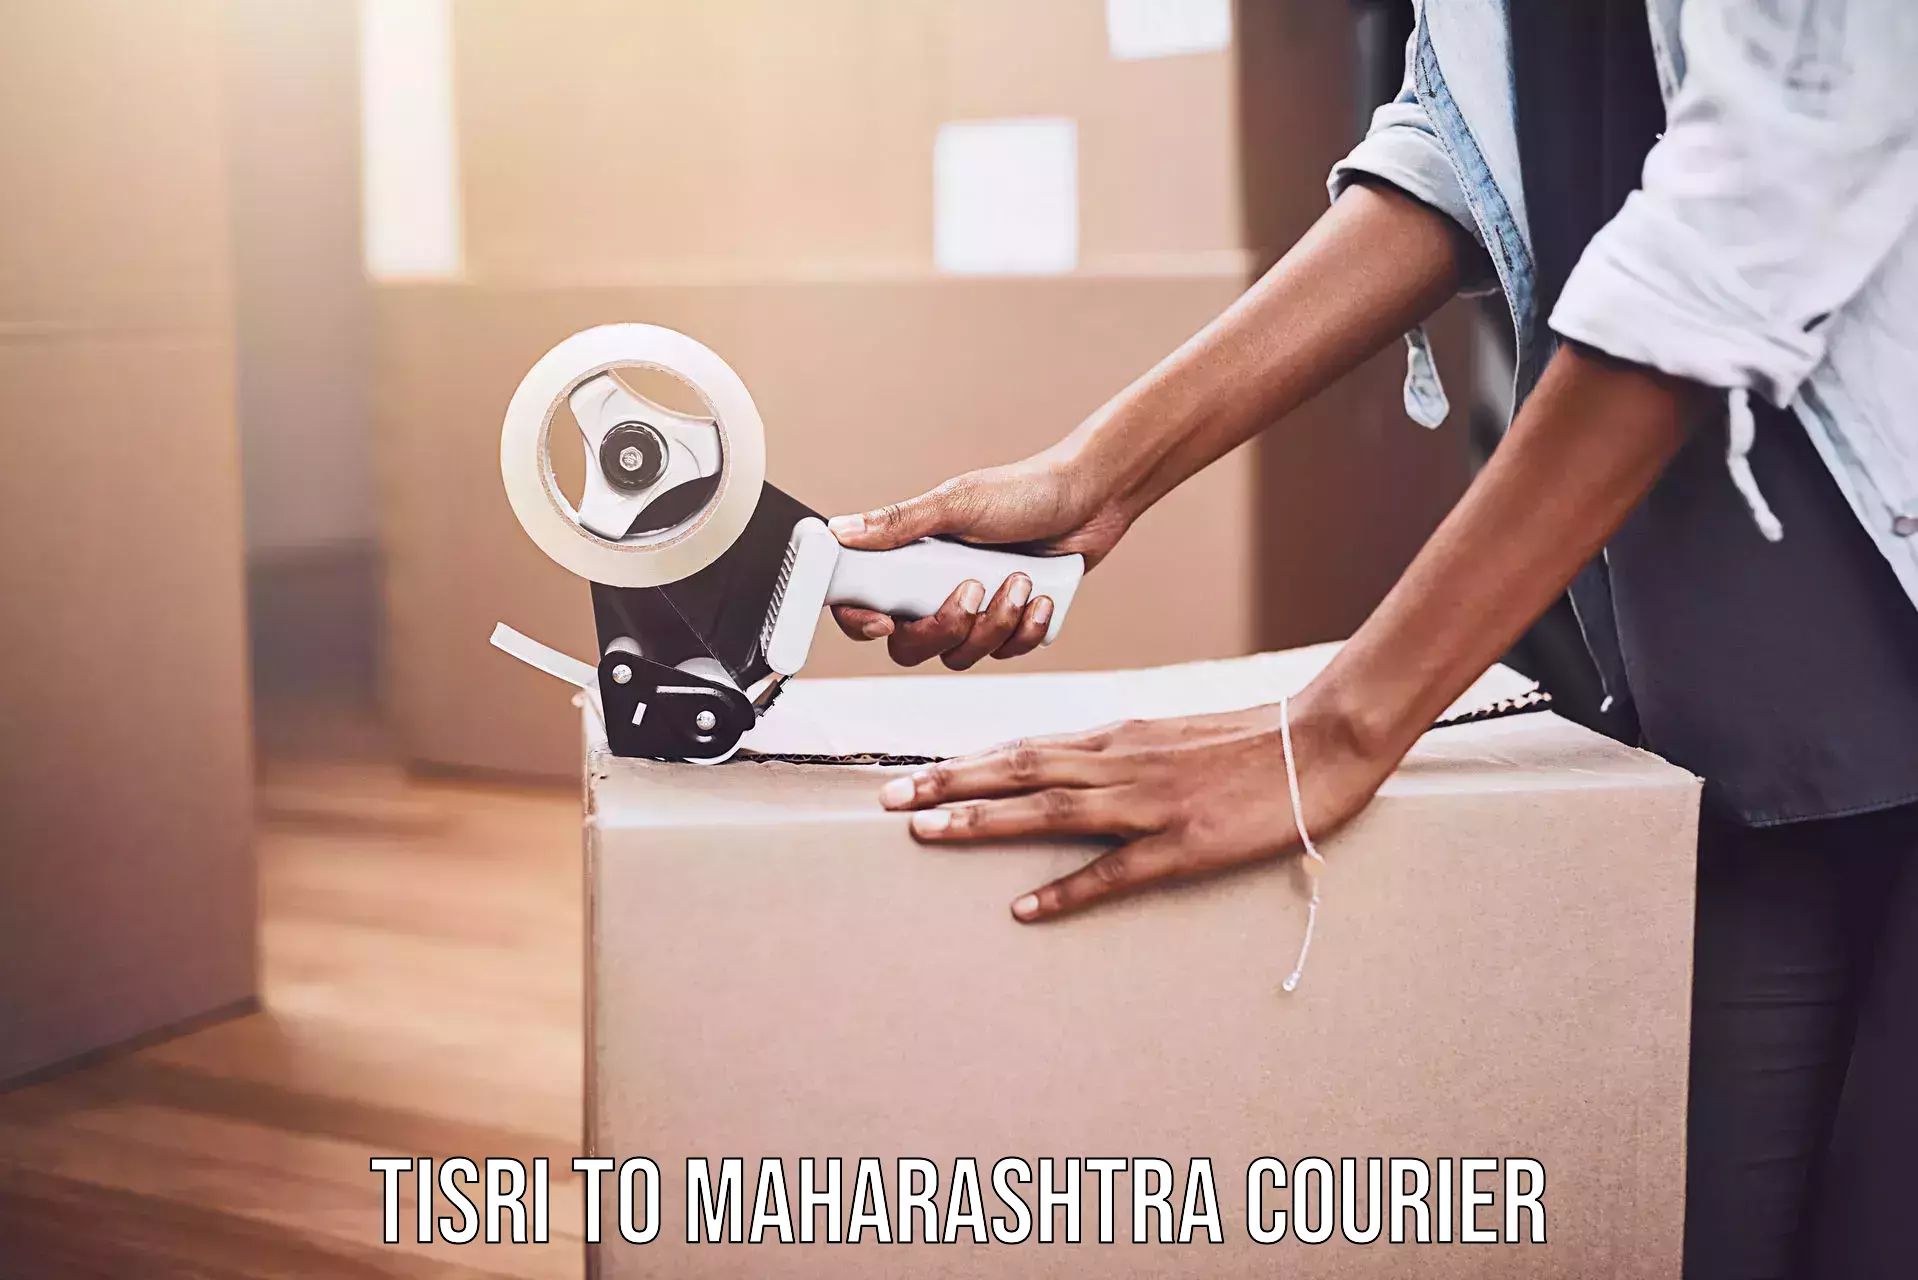 Online shipping calculator Tisri to Shrigonda